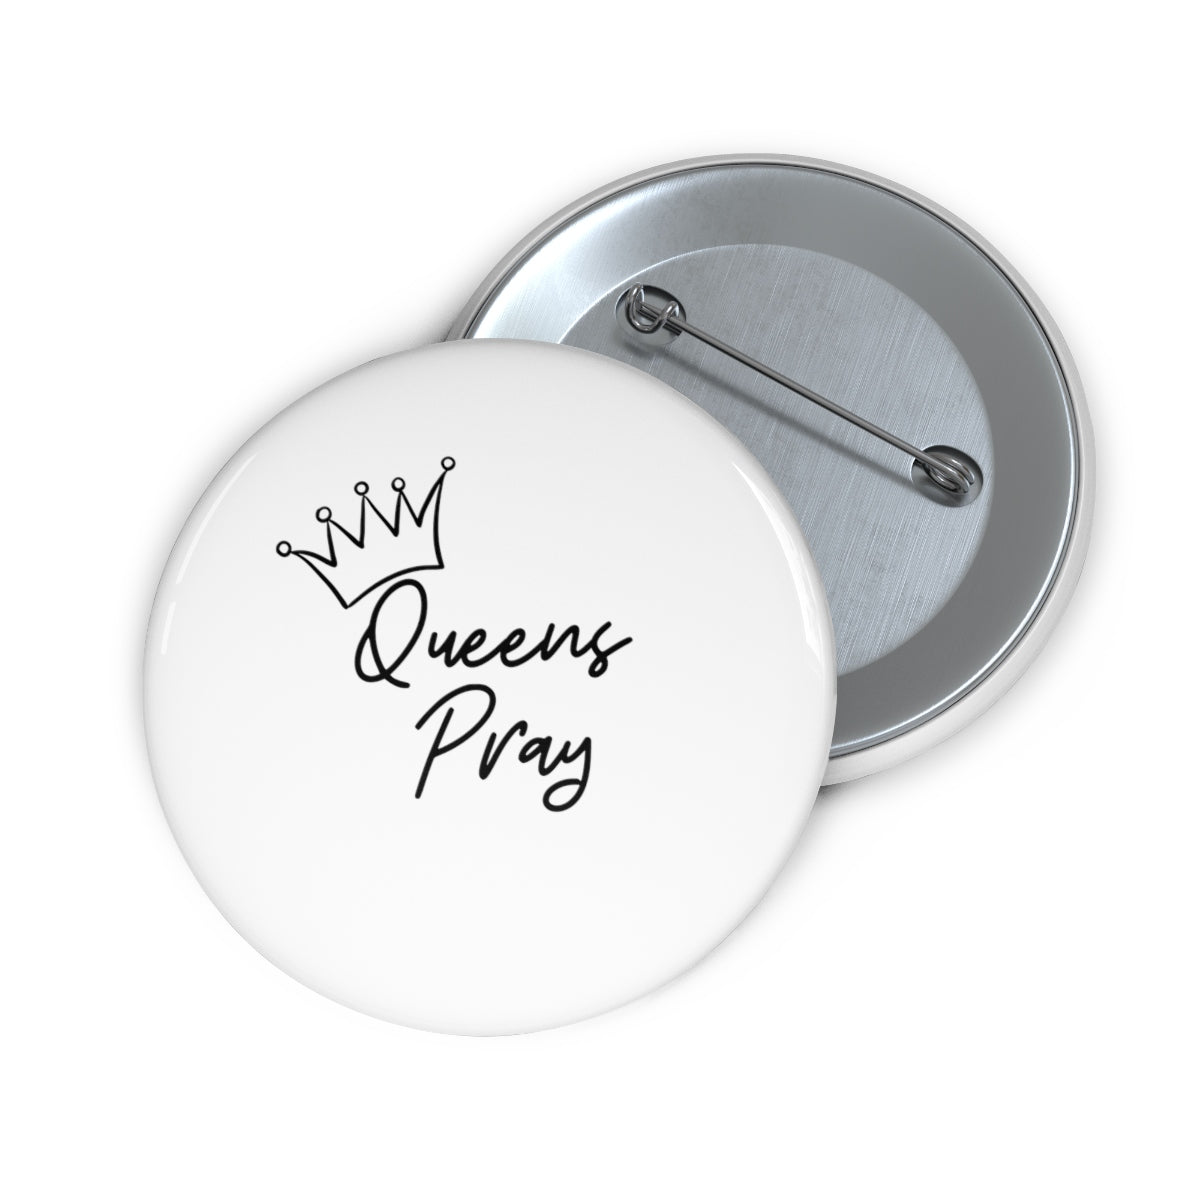 Queens Pray Pin Buttons